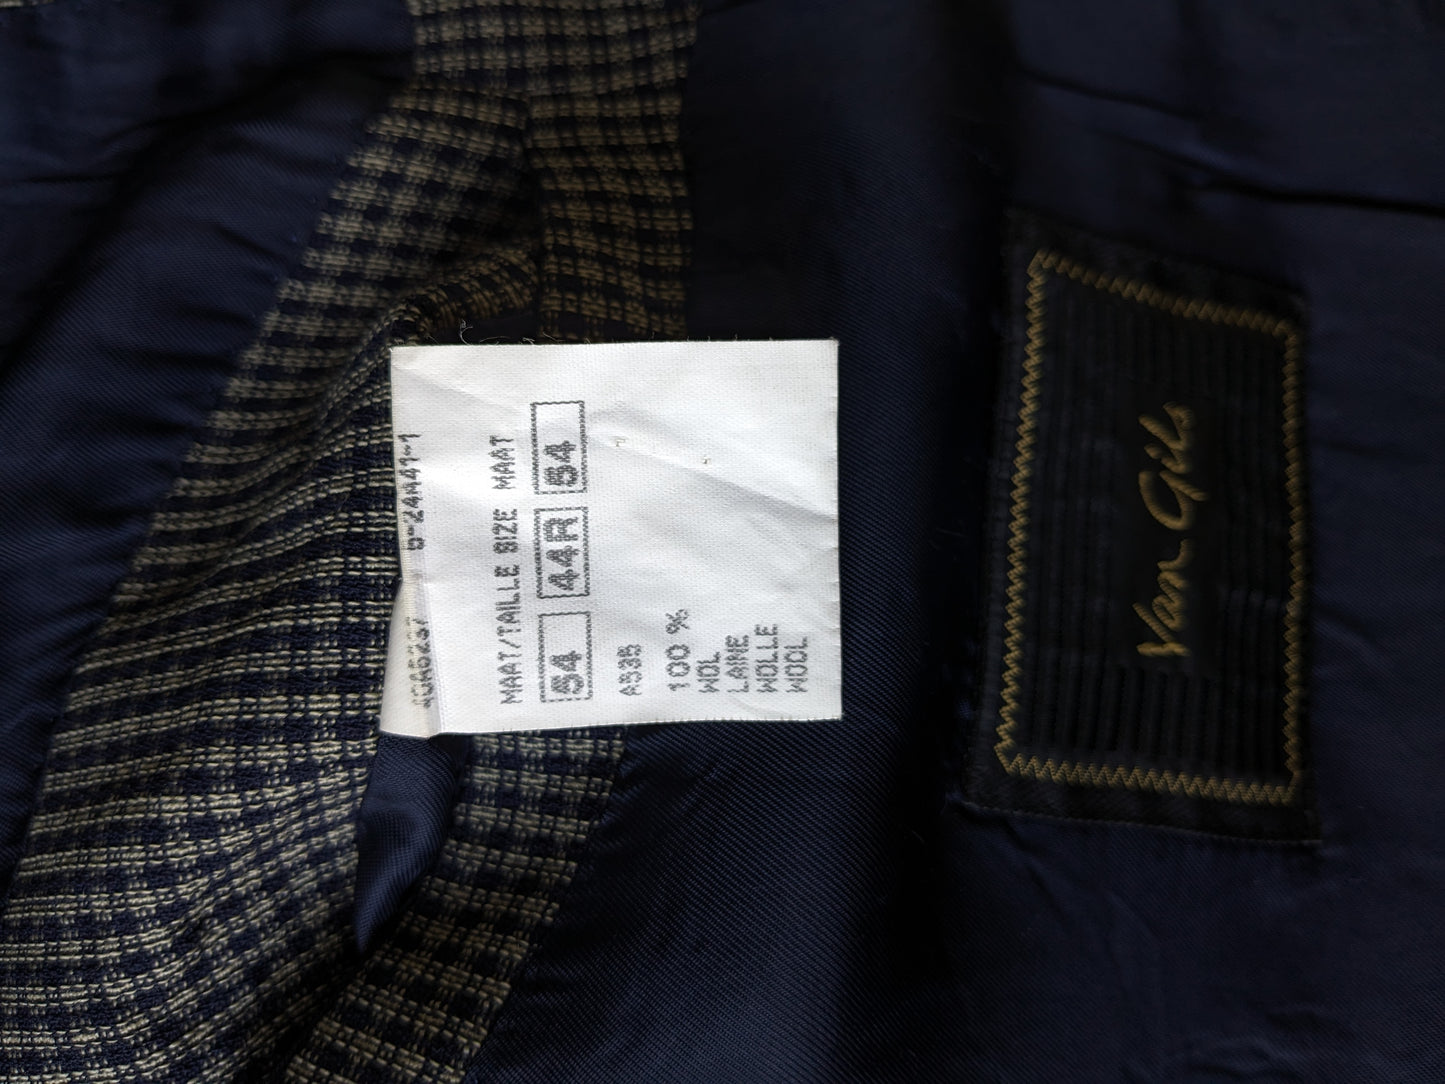 Vanne de laine à double poitrine Van Gils Vintage avec revers de points. Bleu gris vérifié. Taille 54 / L.